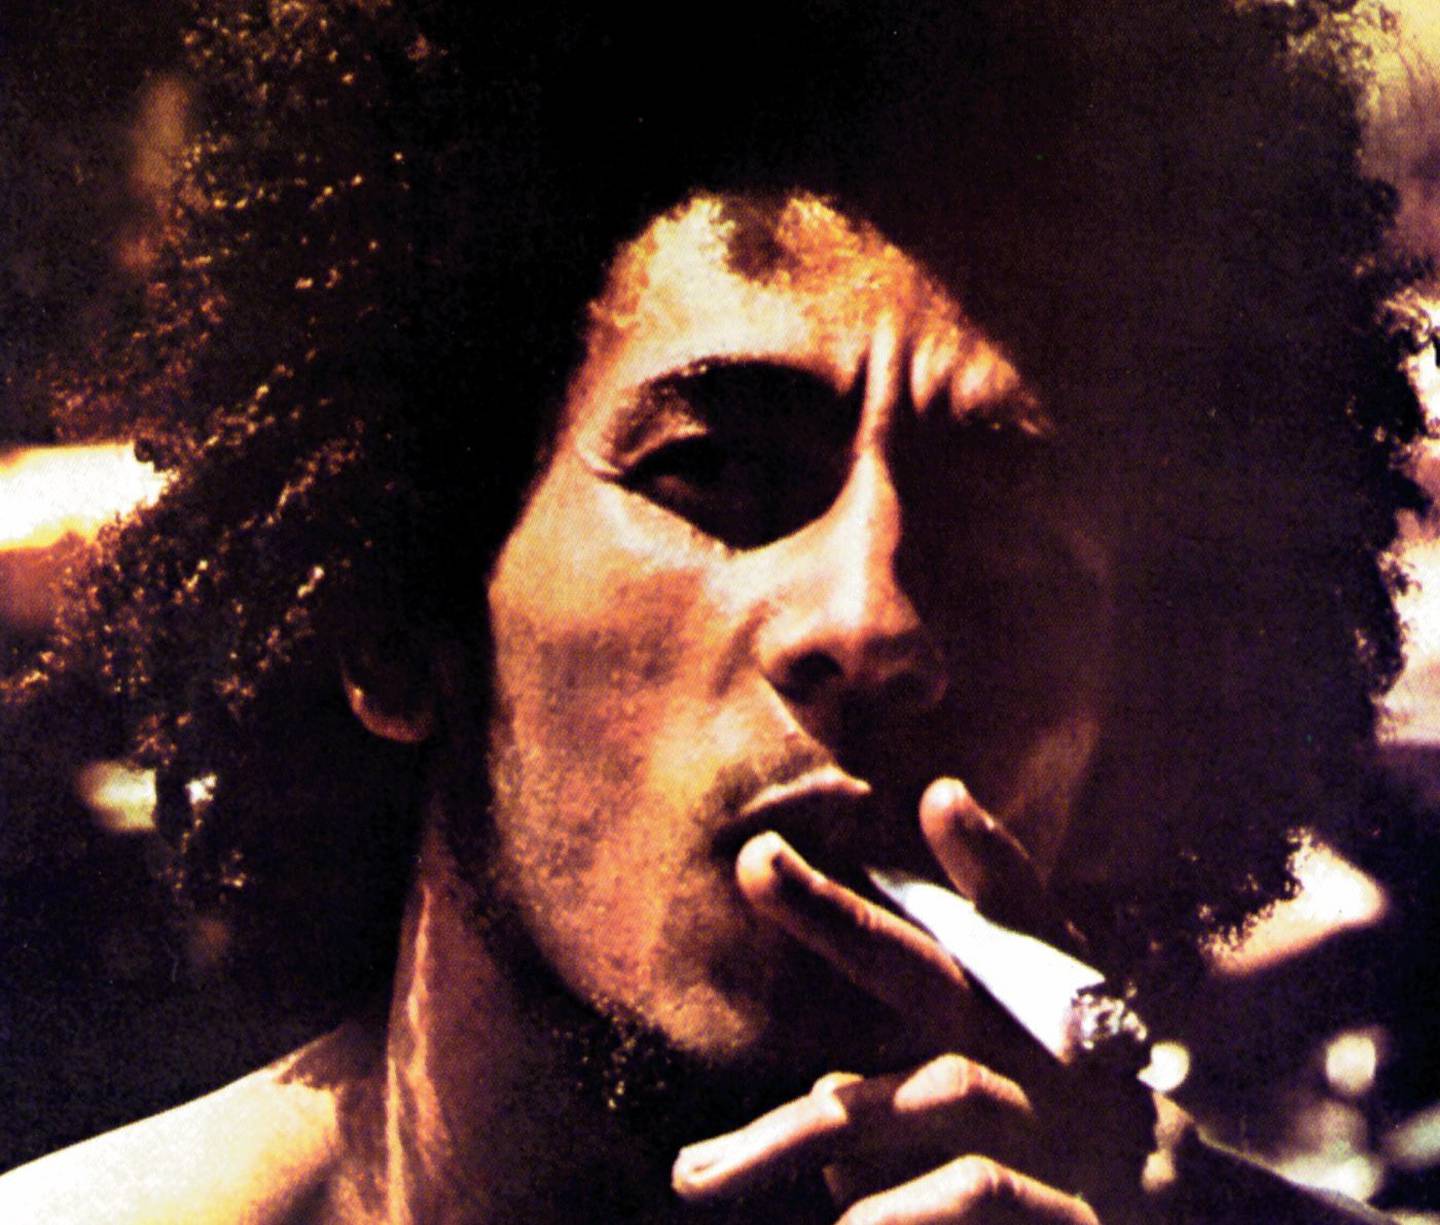 Bob Marley på omslaget til albumet "Catch A Fire", der han i 1973 ble presentert for hele verden.